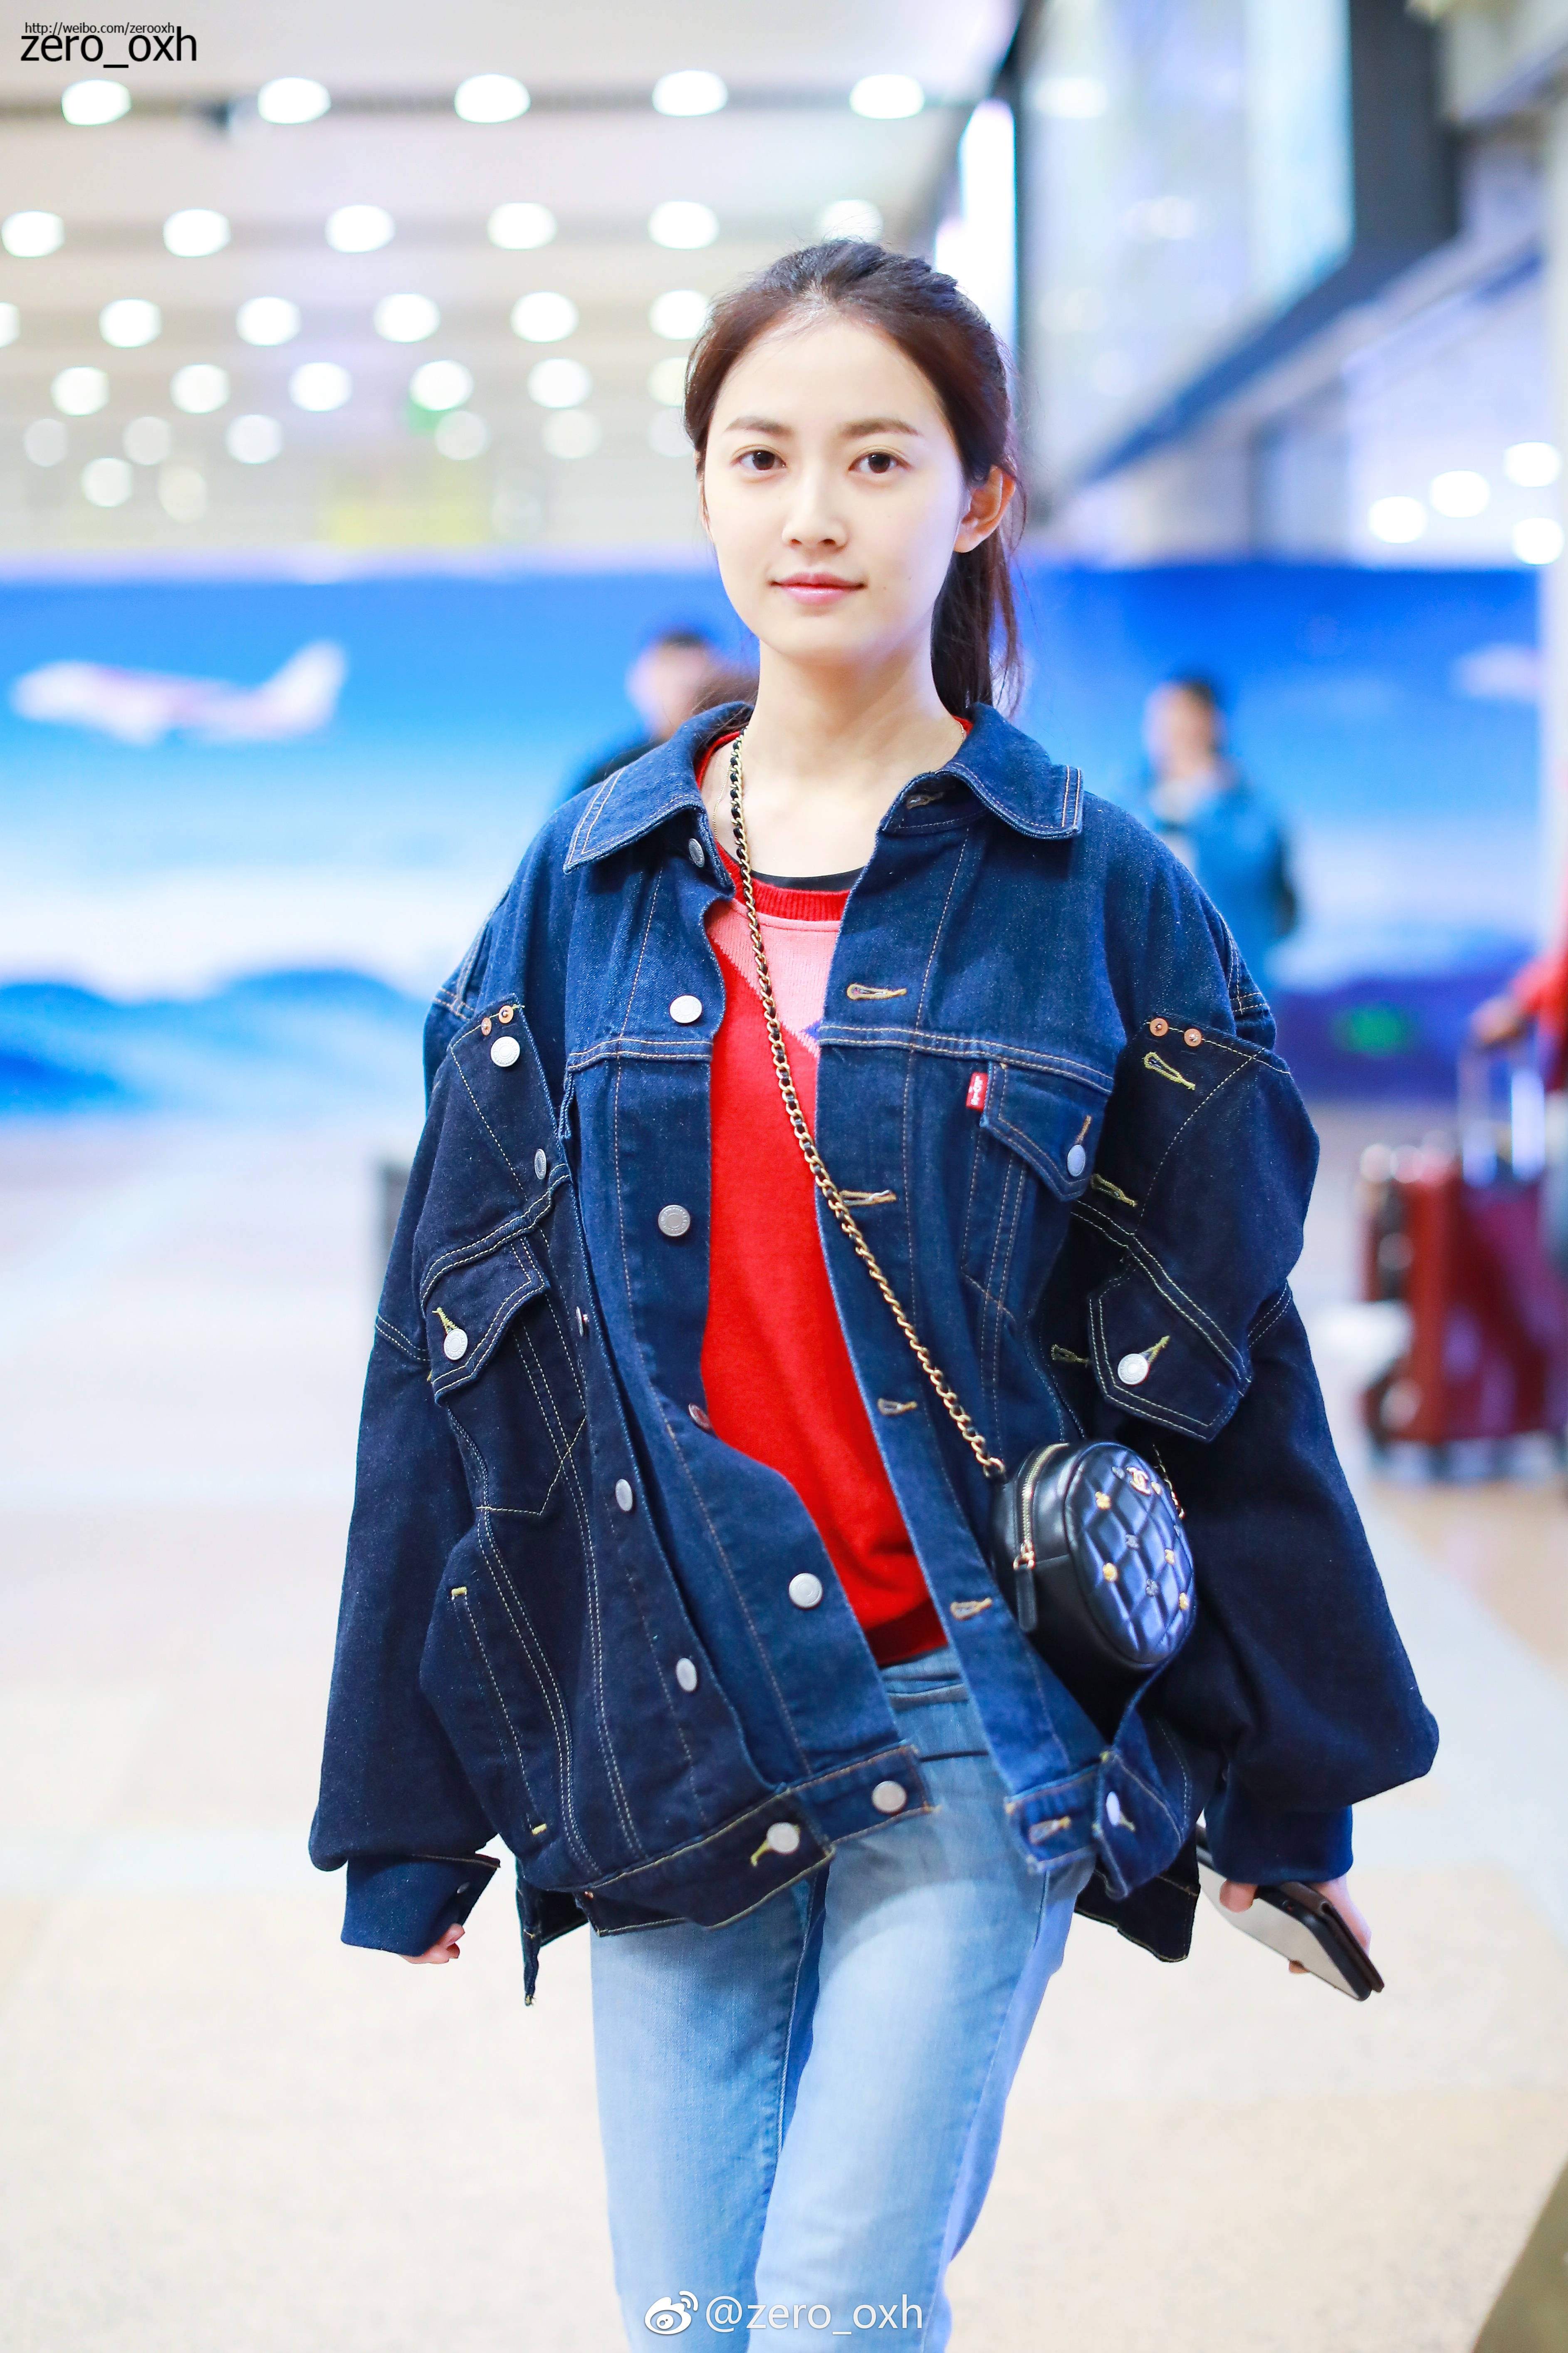 陈钰琪穿蓝色牛仔套装现身机场,皮肤白皙,面带微笑.